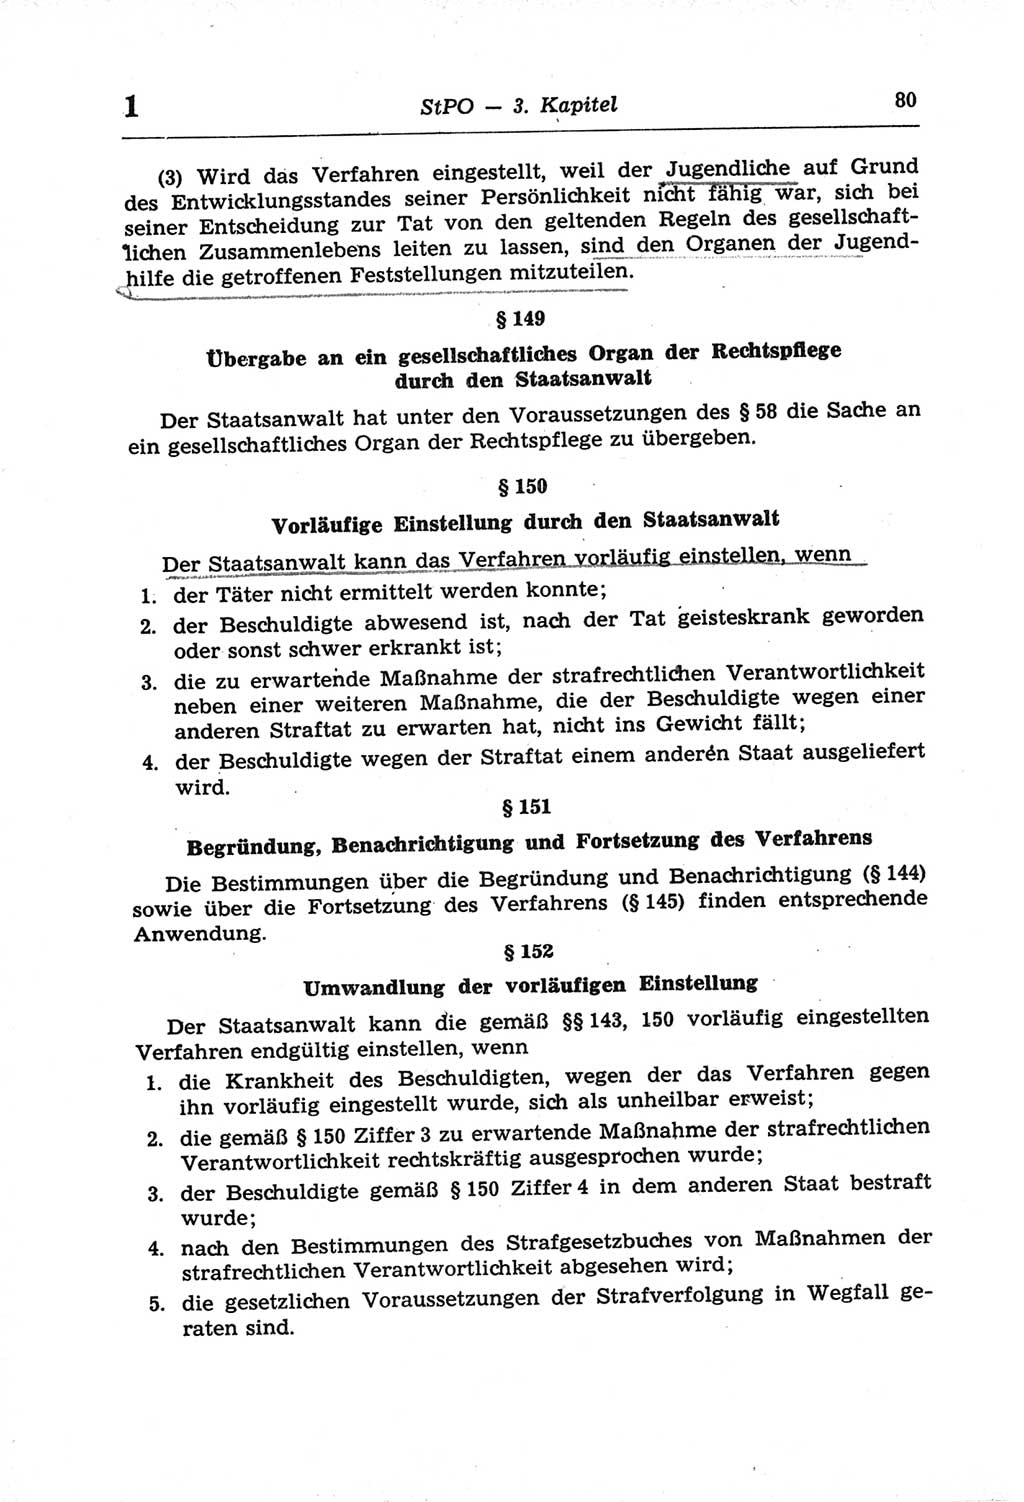 Strafprozeßordnung (StPO) der Deutschen Demokratischen Republik (DDR) und angrenzende Gesetze und Bestimmungen 1968, Seite 80 (StPO Ges. Bstgn. DDR 1968, S. 80)